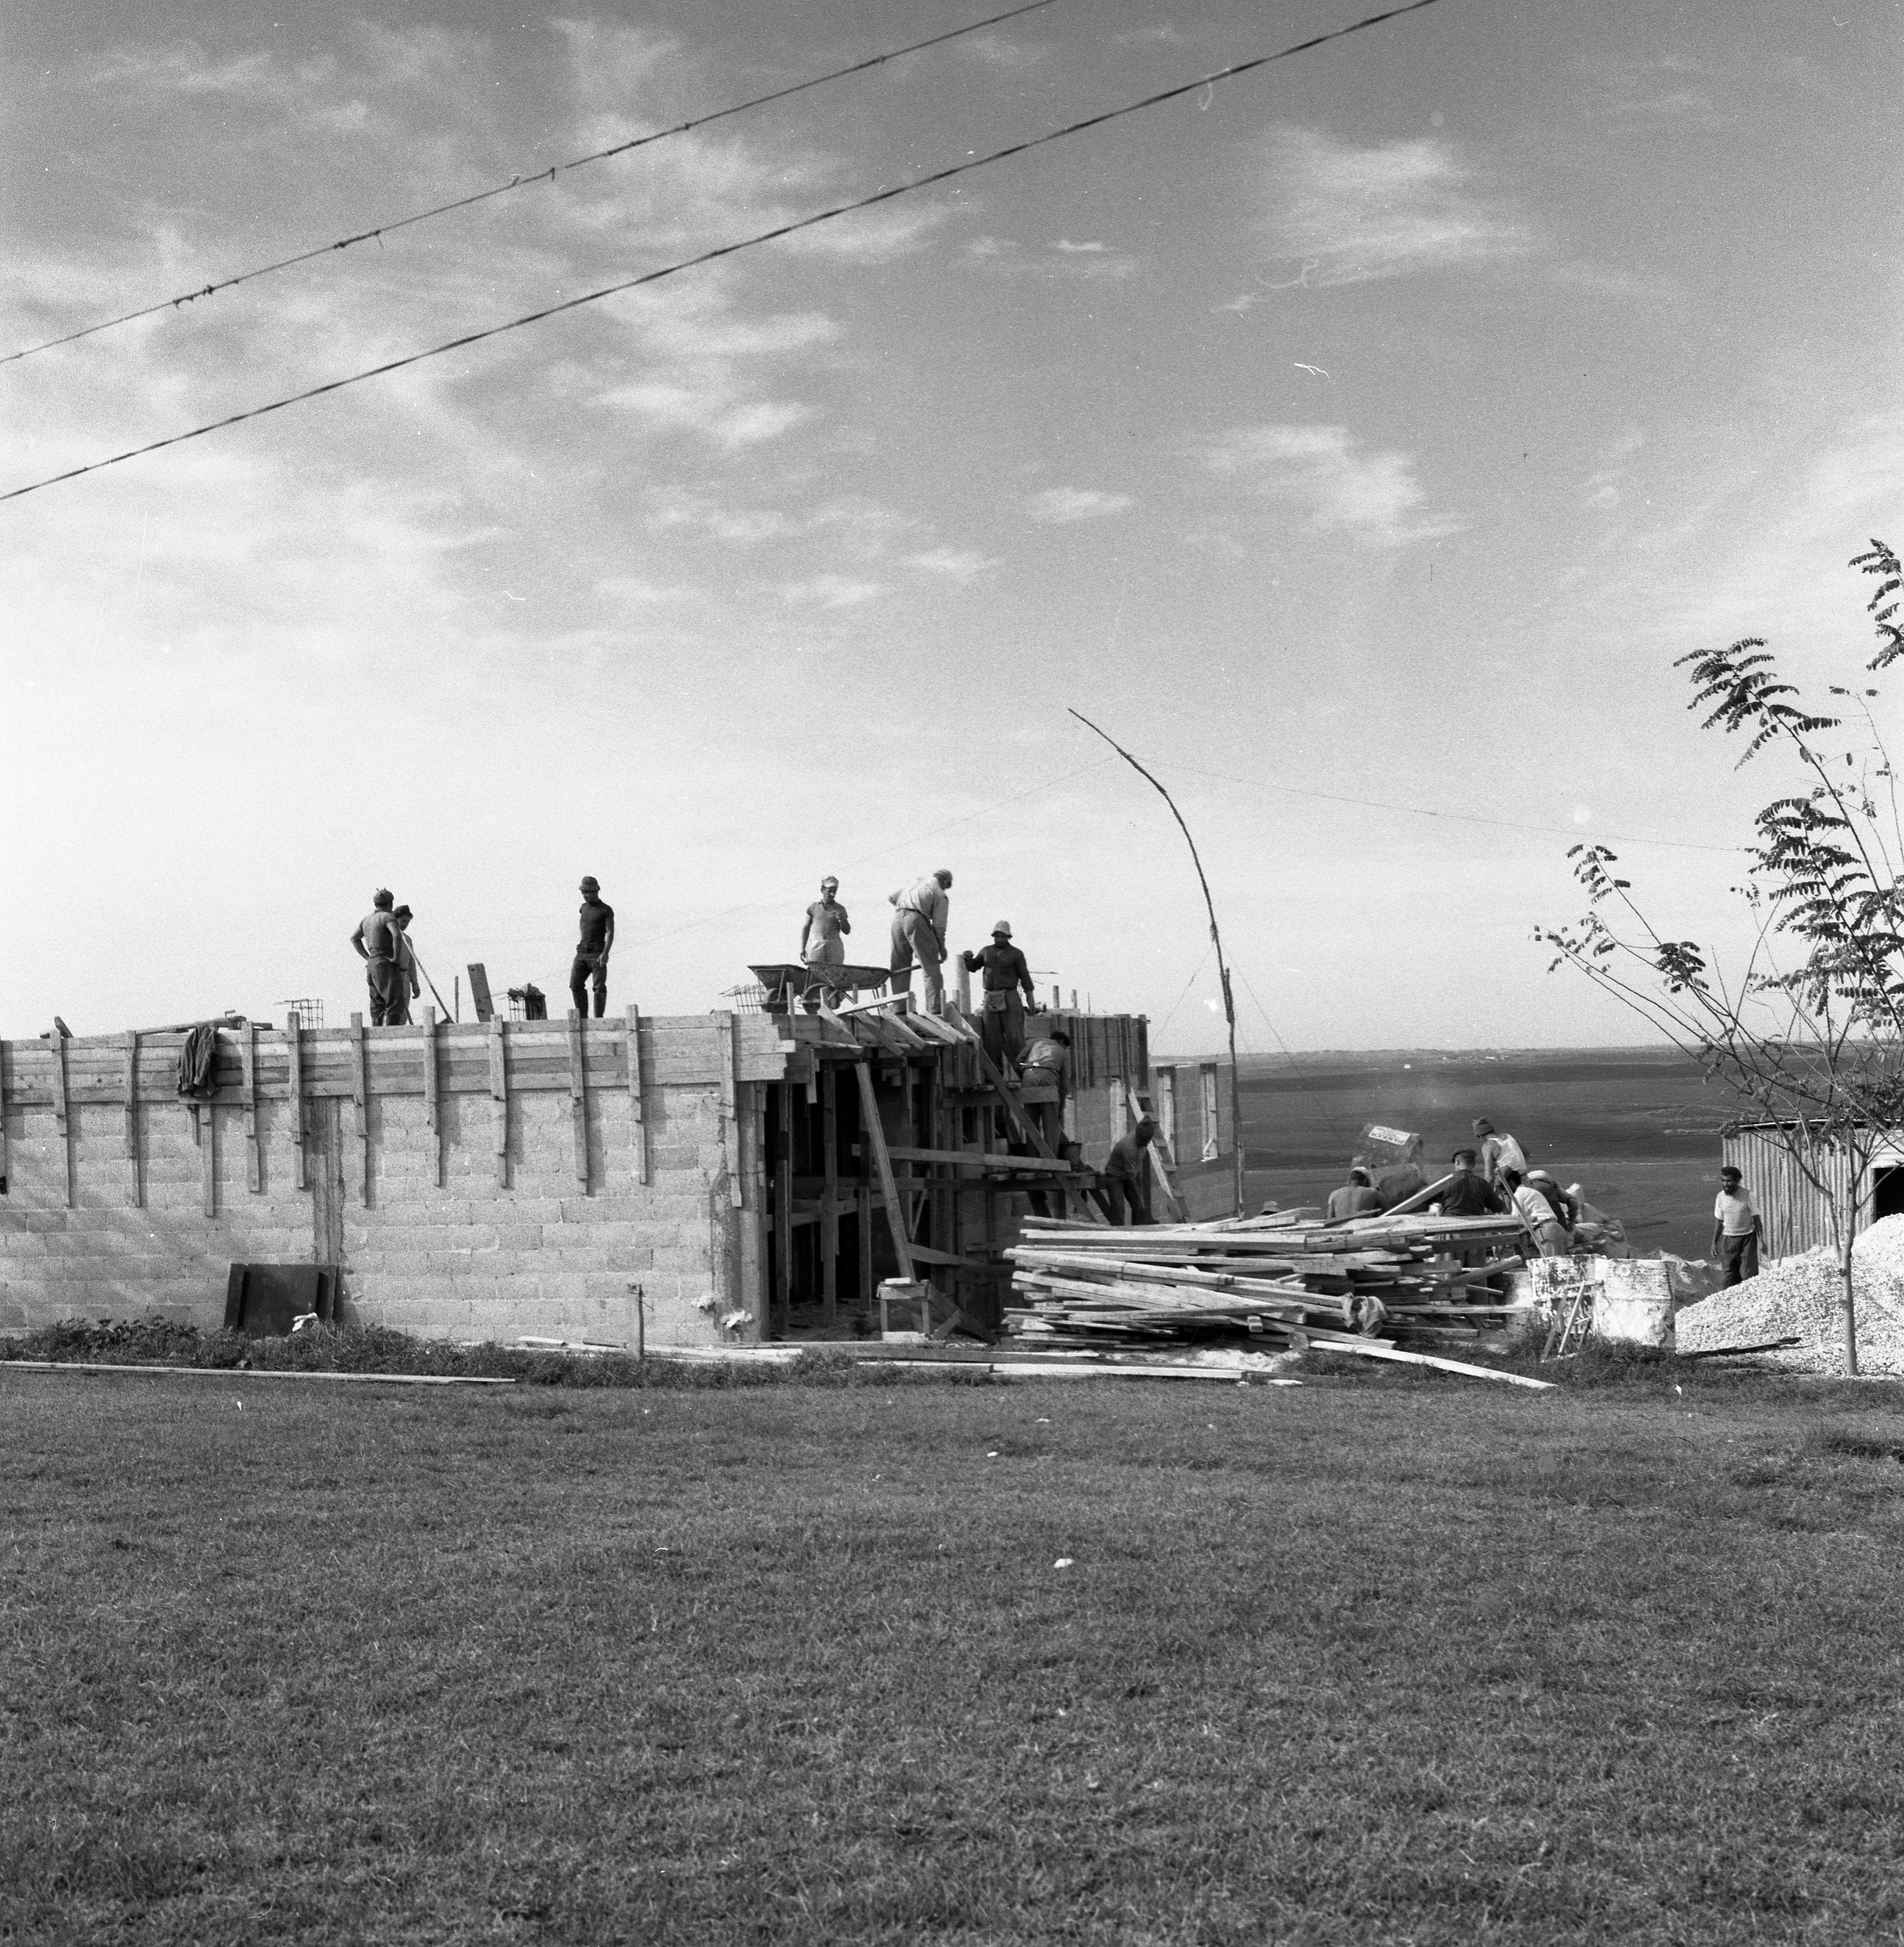  בנייה במוסד; 1960